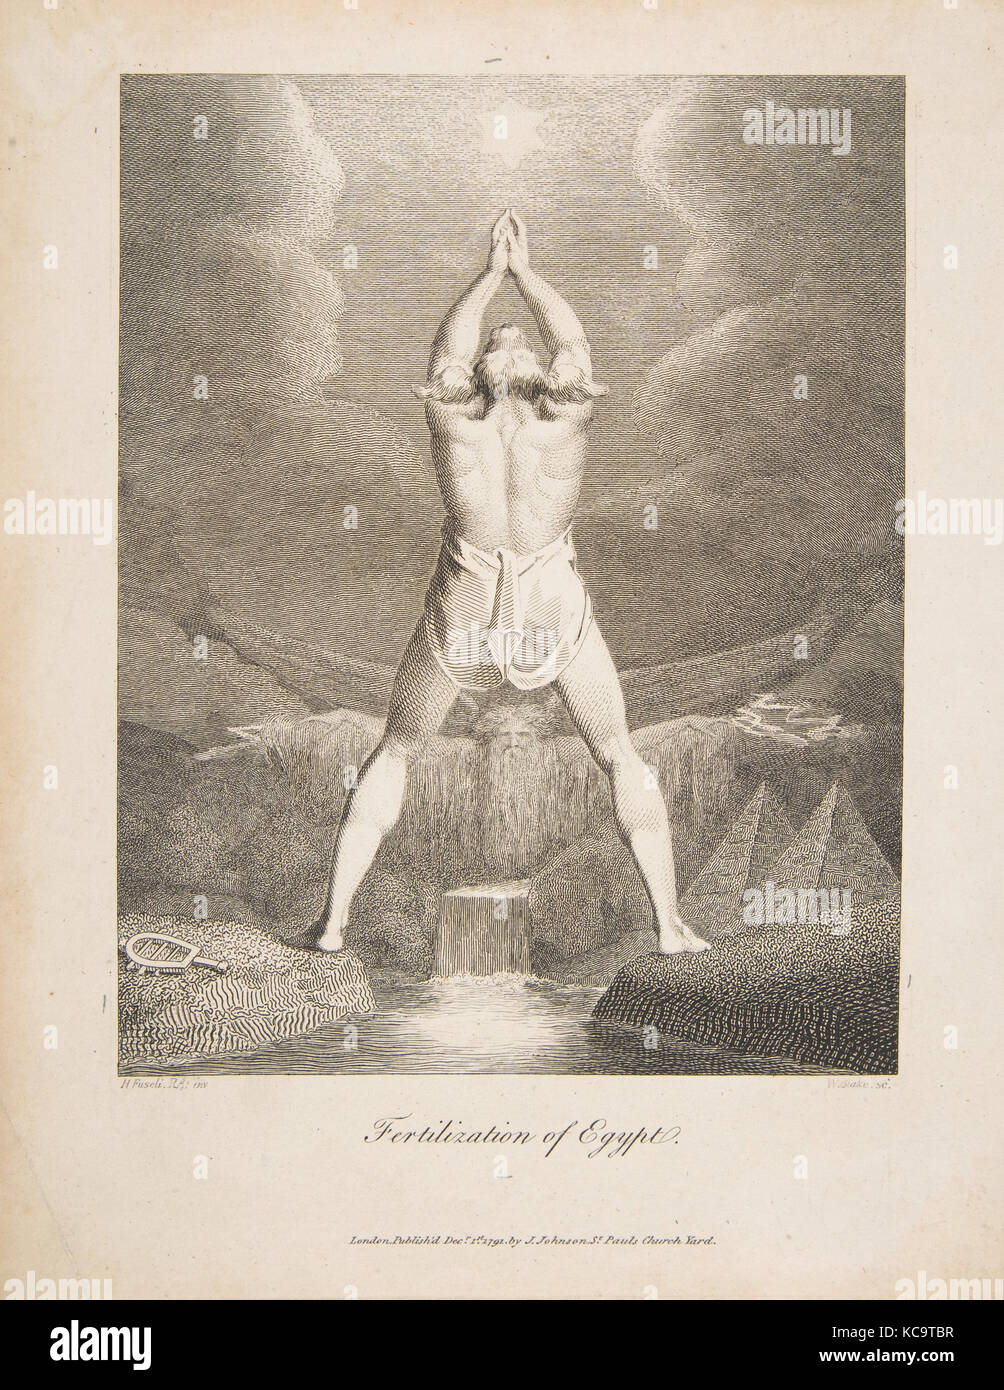 La Fertilización de Egipto (Erasmus Darwin, el jardín botánico), William Blake, 1791 Foto de stock